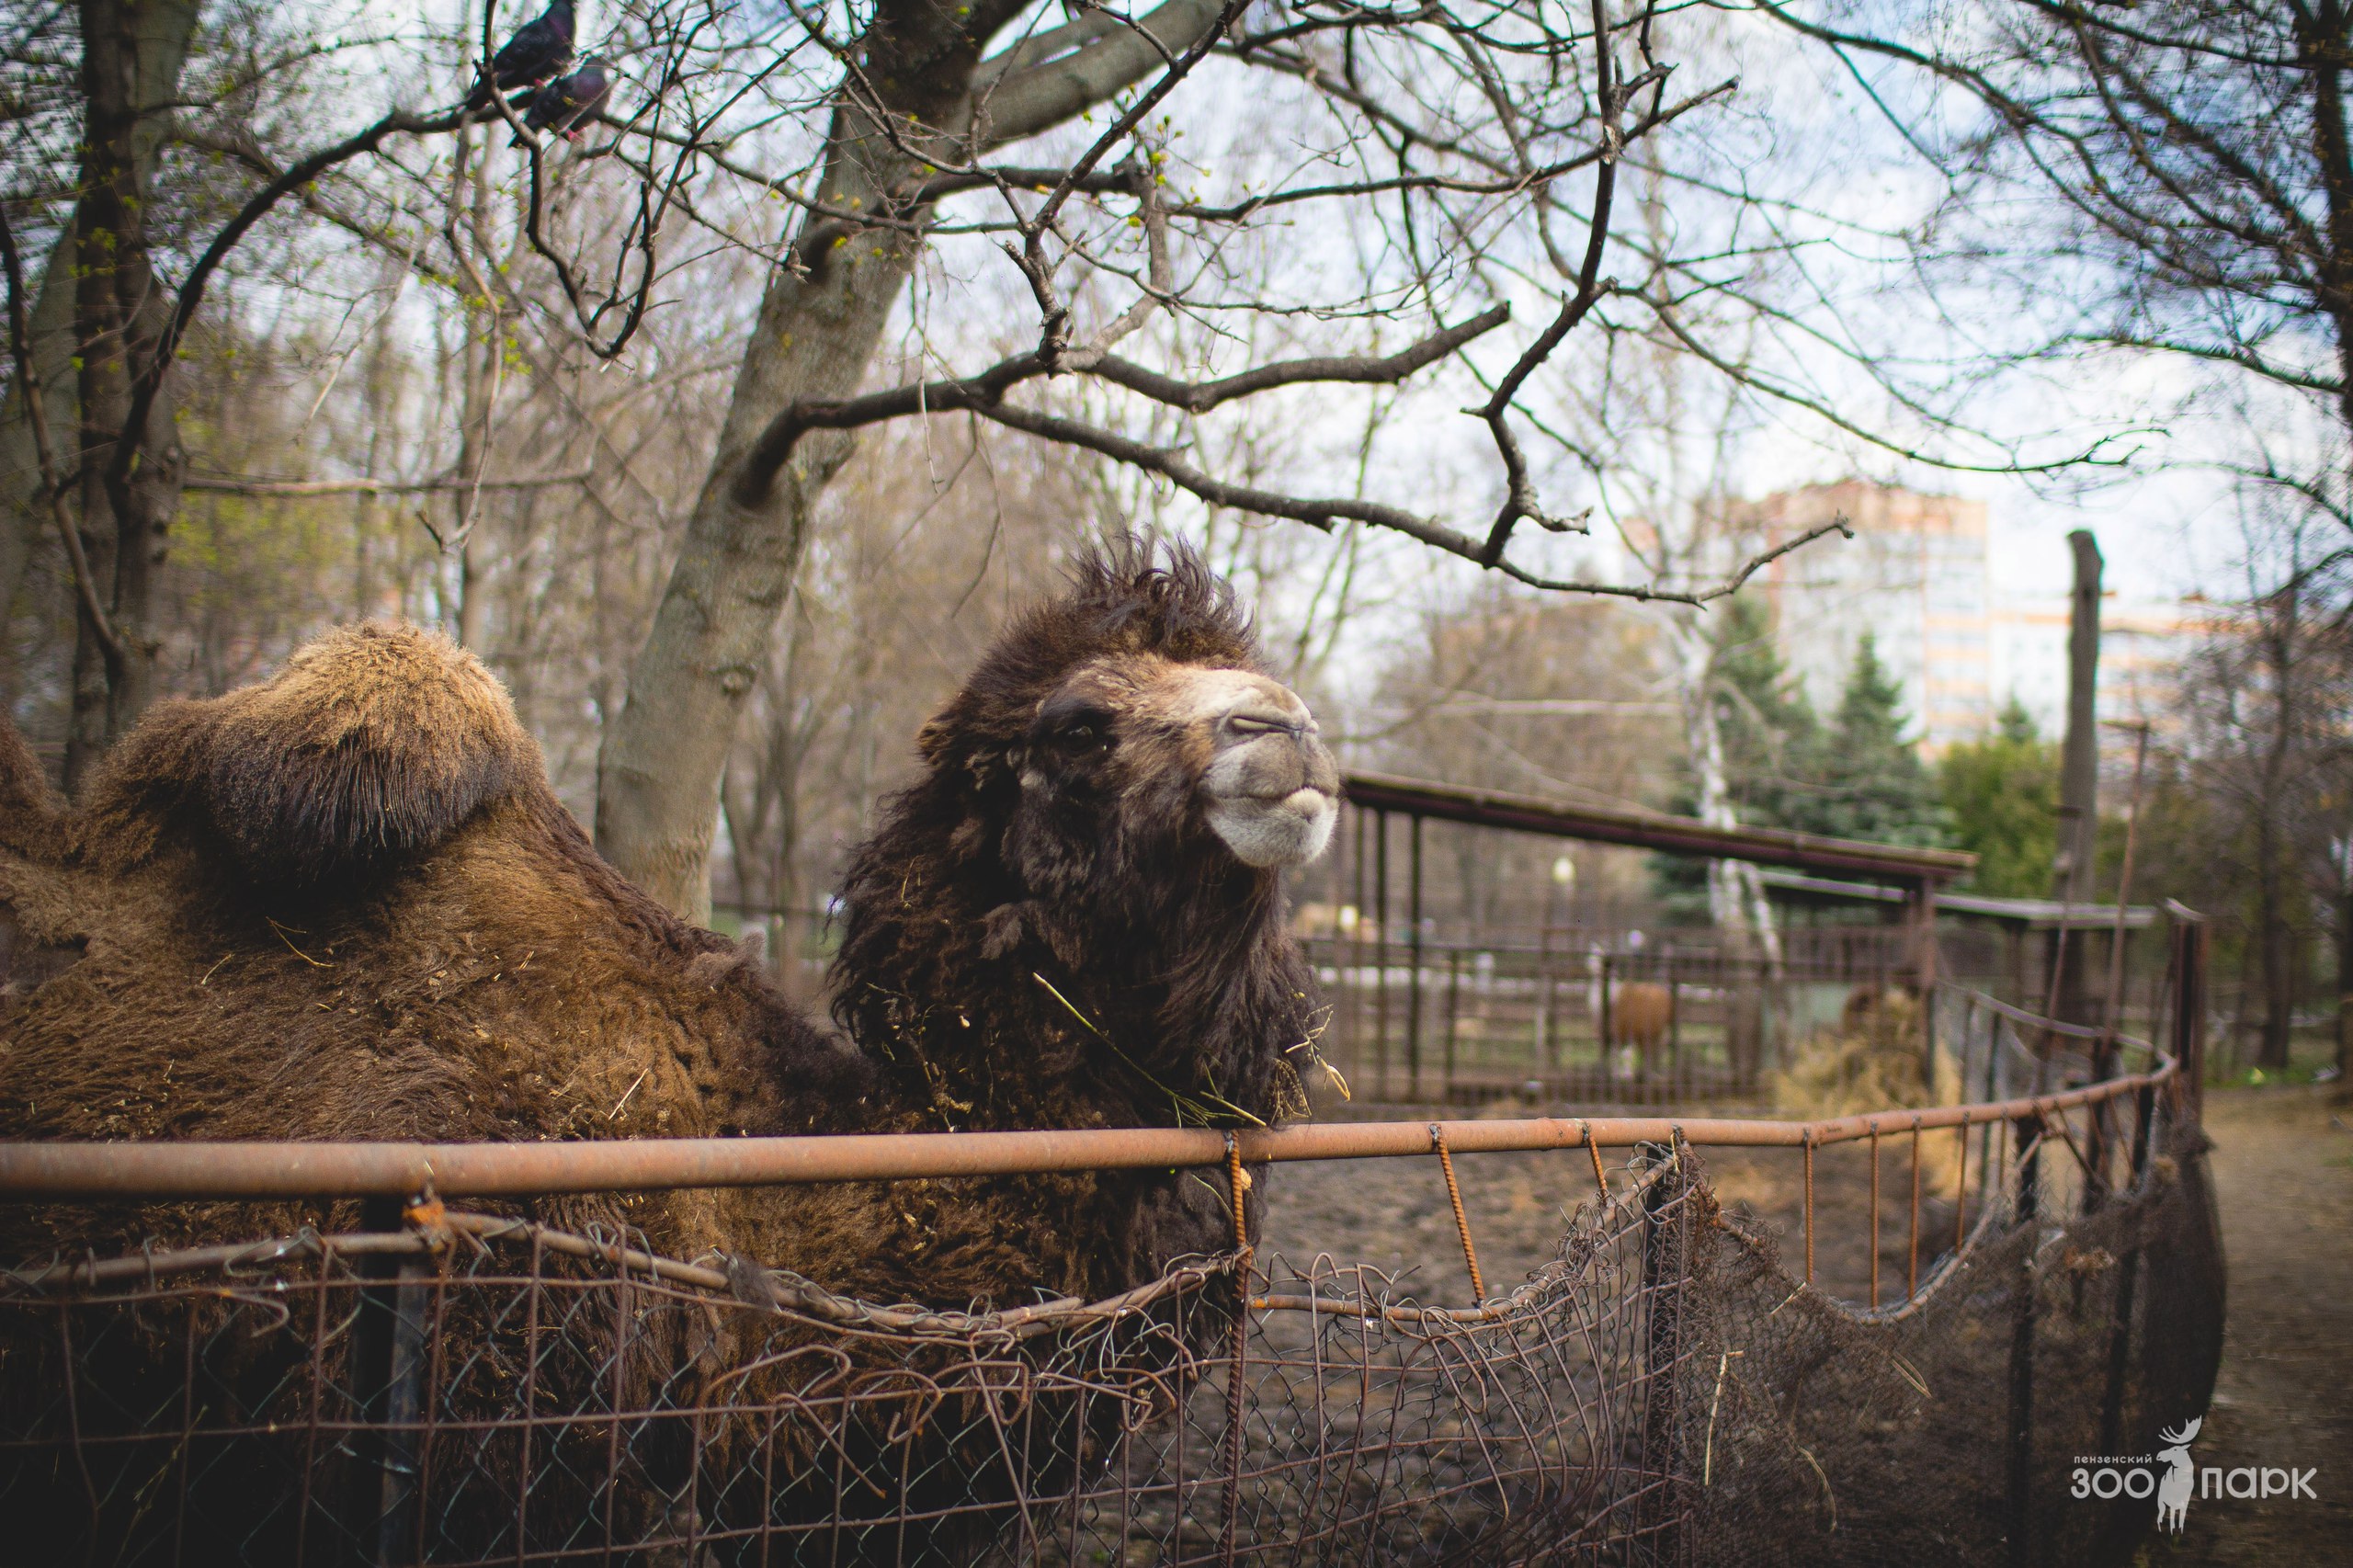 Пензенский зоопарк ответил горожанам на вопросы о "непривлекательном" виде животных